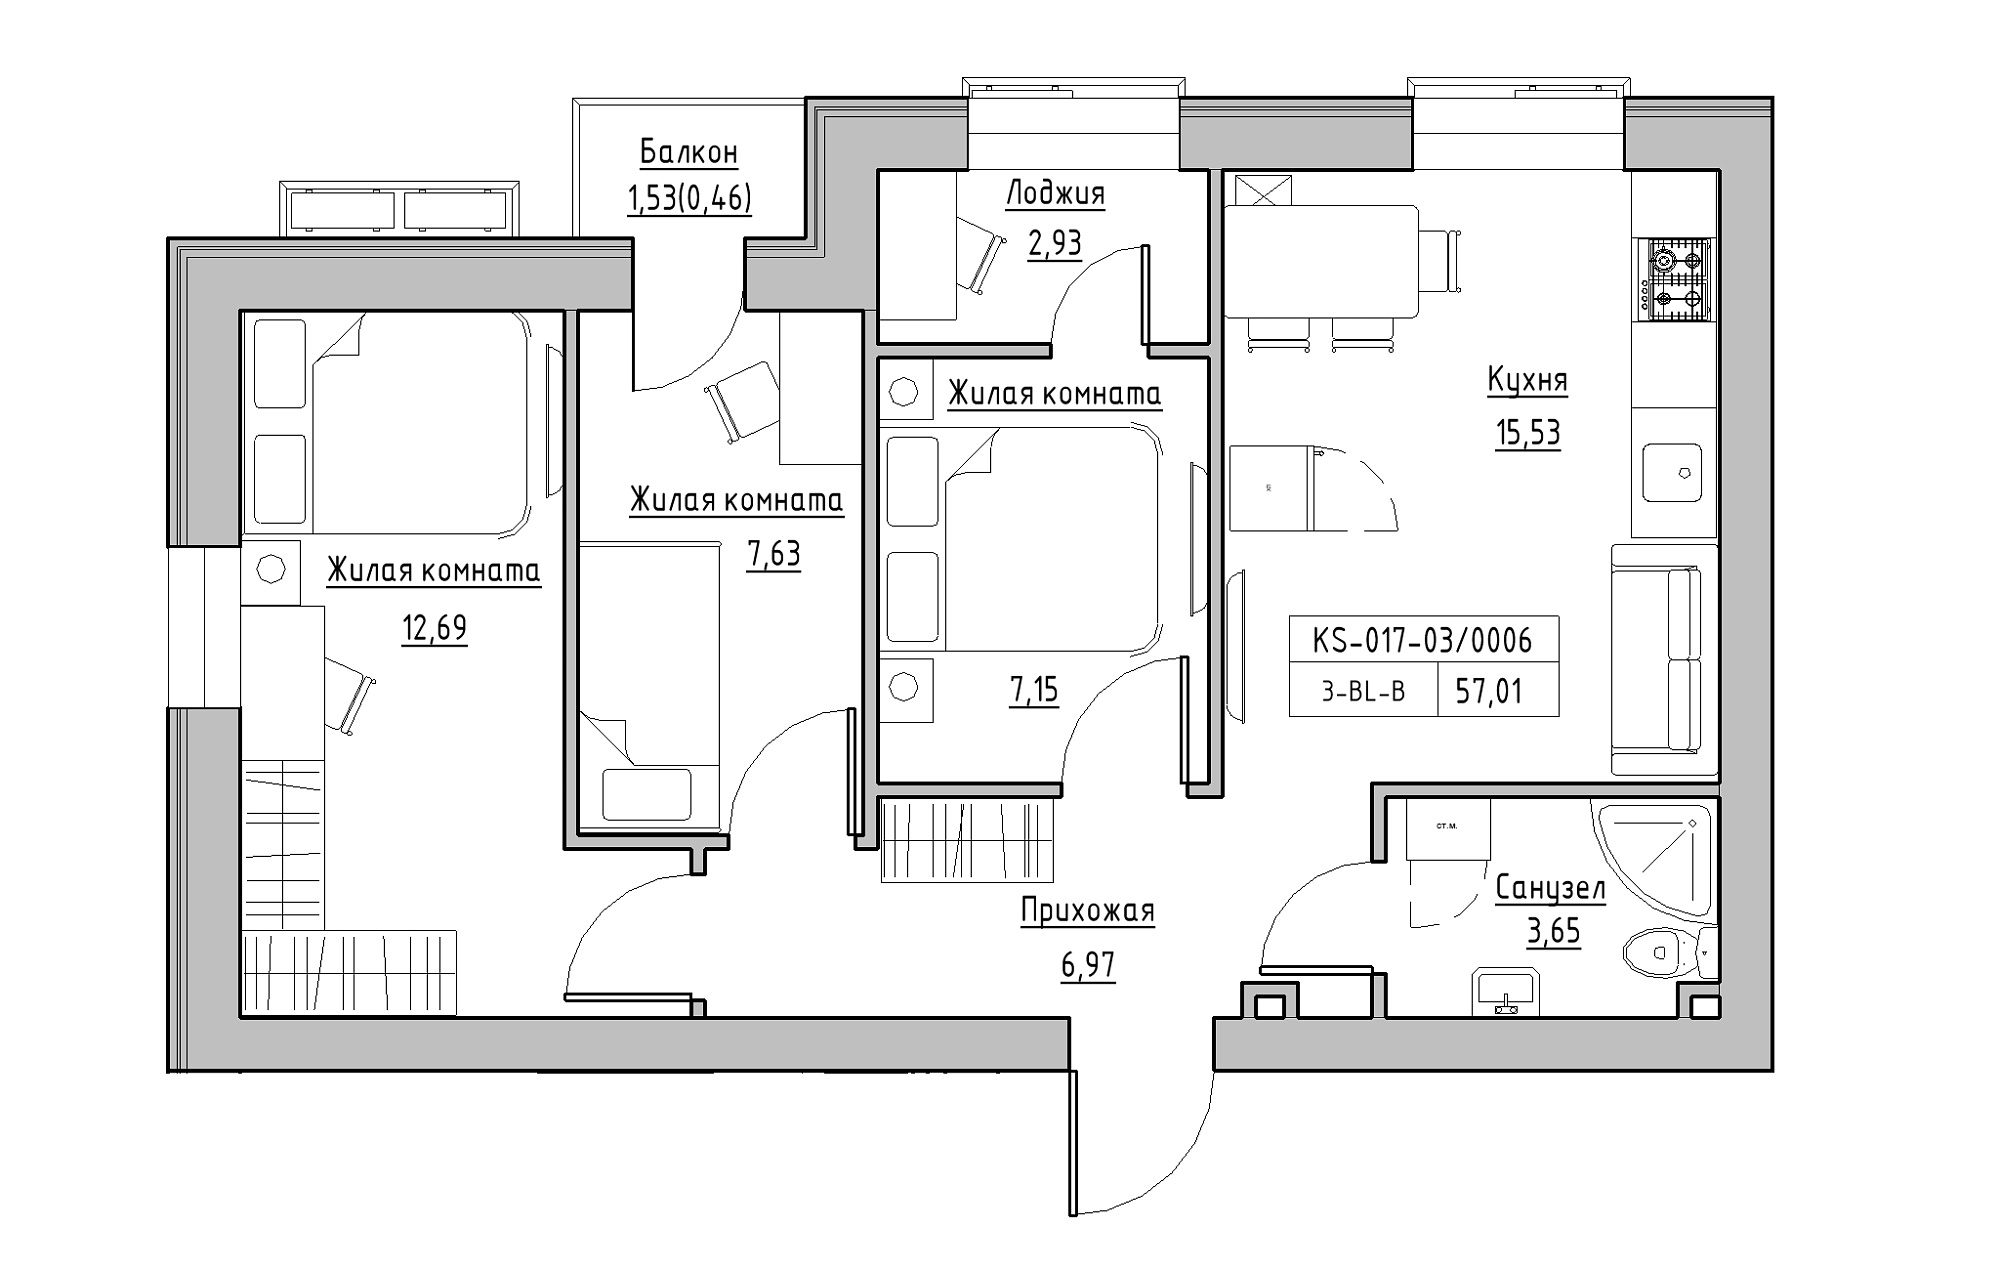 Планировка 3-к квартира площей 57.01м2, KS-017-03/0006.